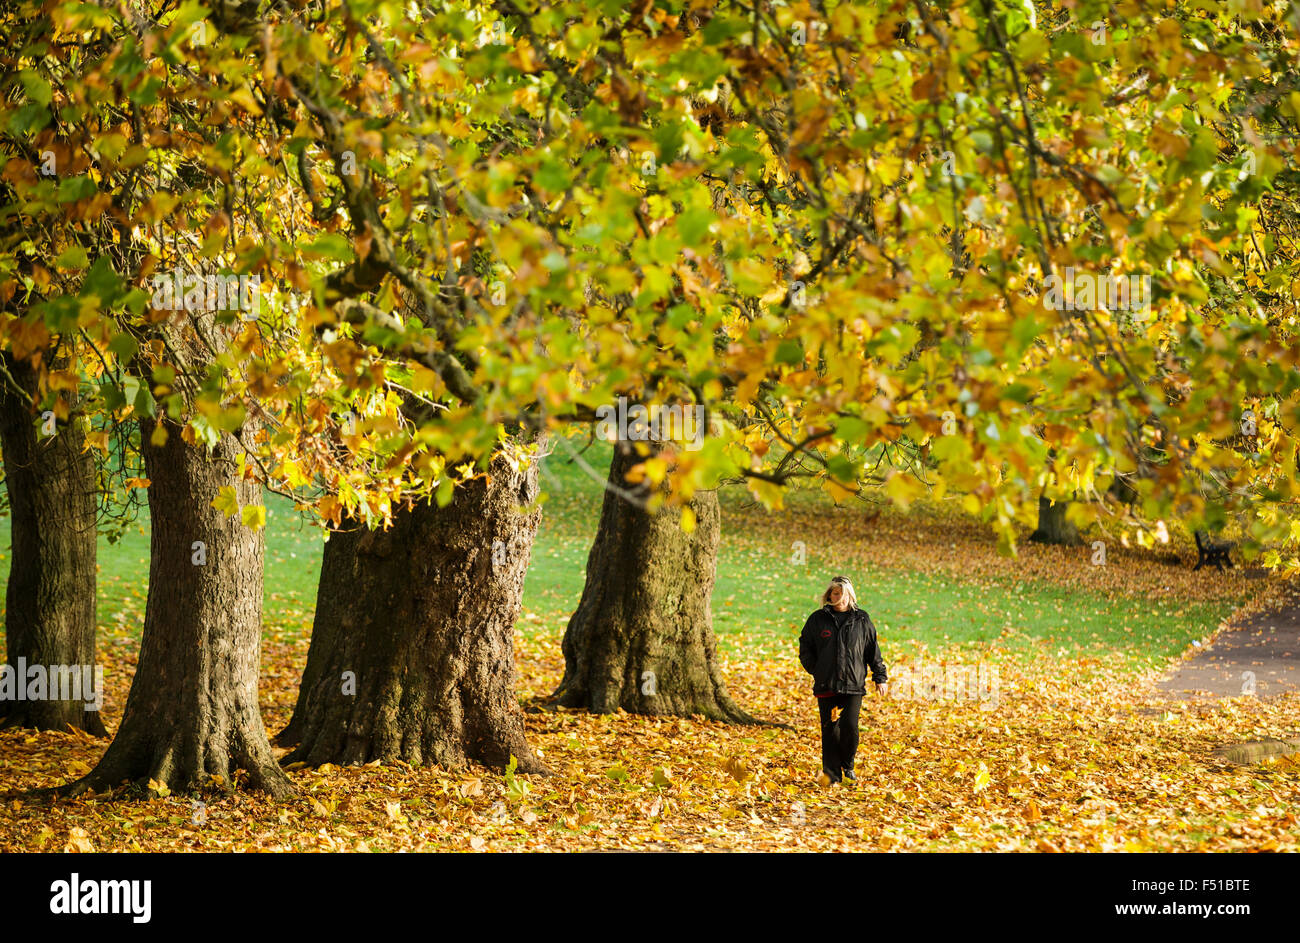 Bristol, Reino Unido. 26 Oct, 2015. La gente hace la mayoría de los climas secos a caminar pasado el Golden árboles en la mañana de otoño de sol en St George's Park, Bristol, 26 de octubre de 2015 Créditos: Adam Gasson/Alamy Live News Foto de stock